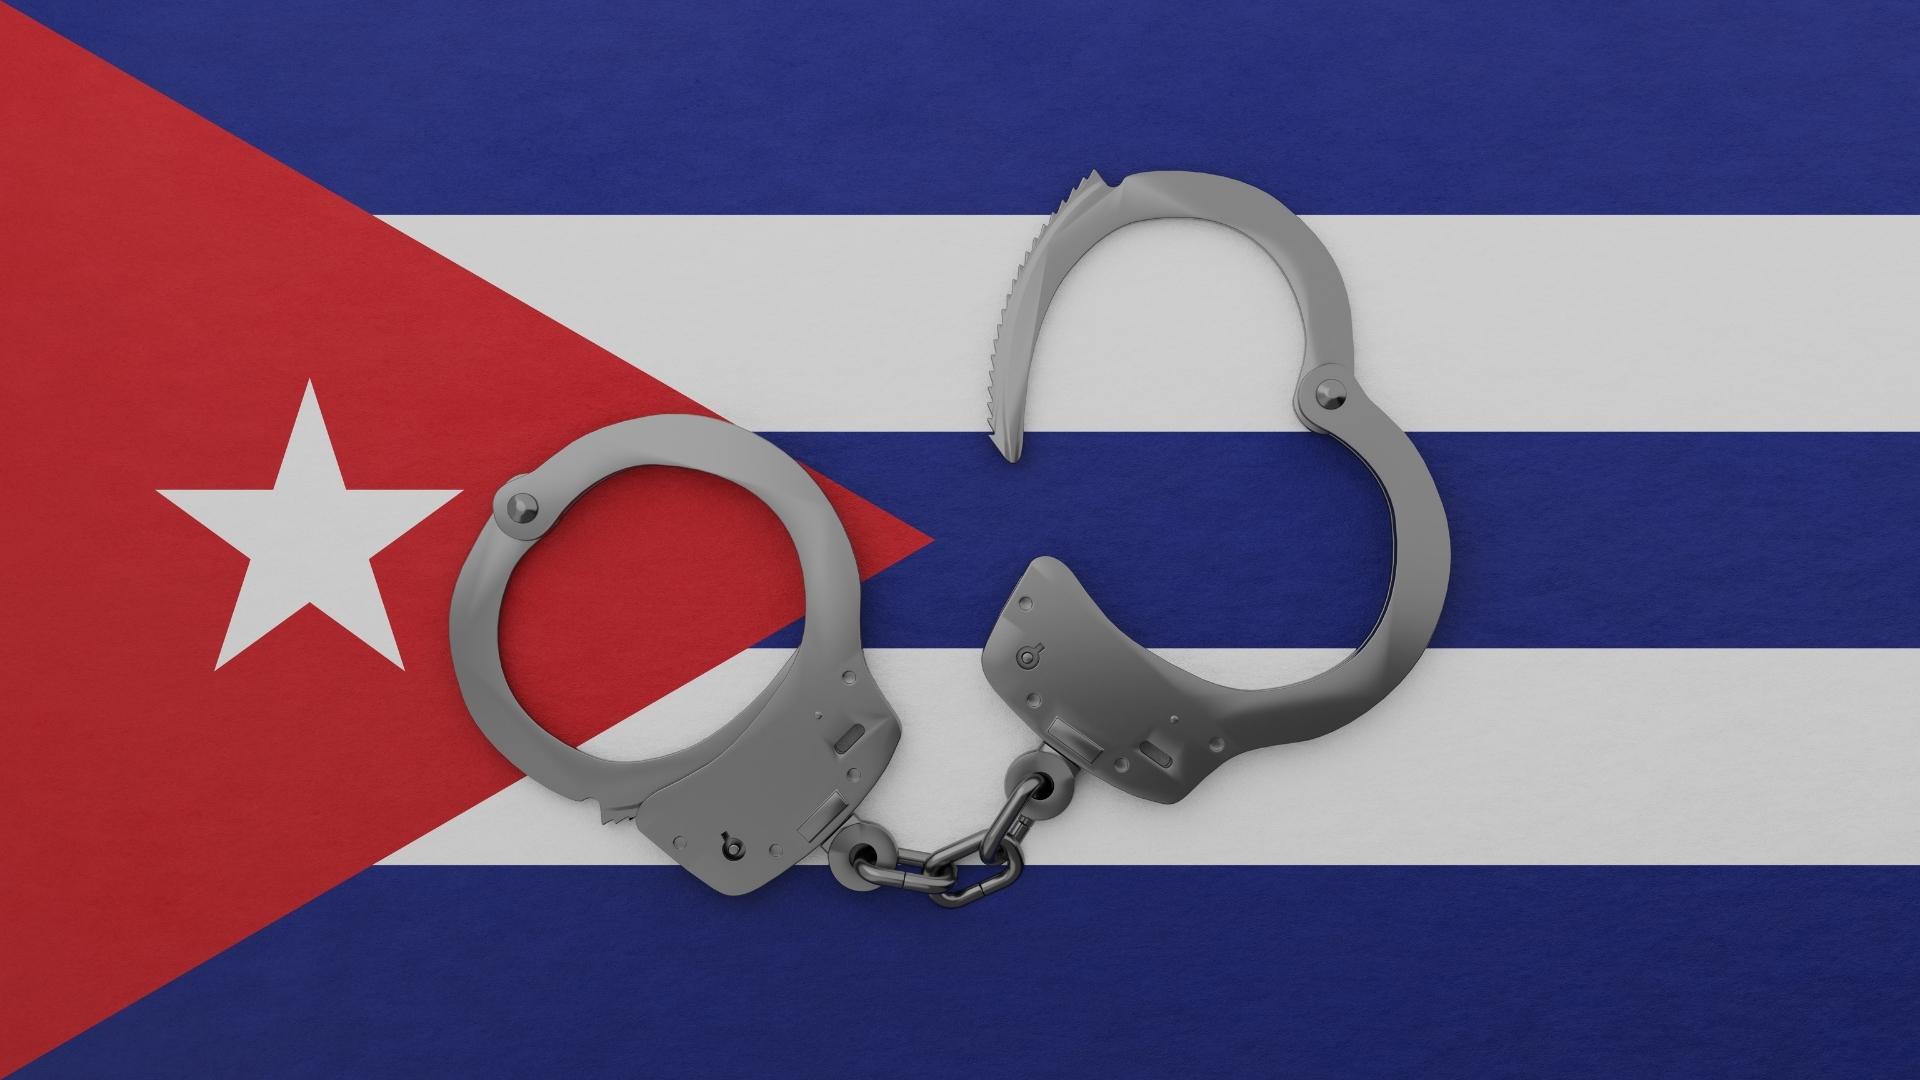 Presos políticos en Cuba. Imagen de referencia: Shutterstock